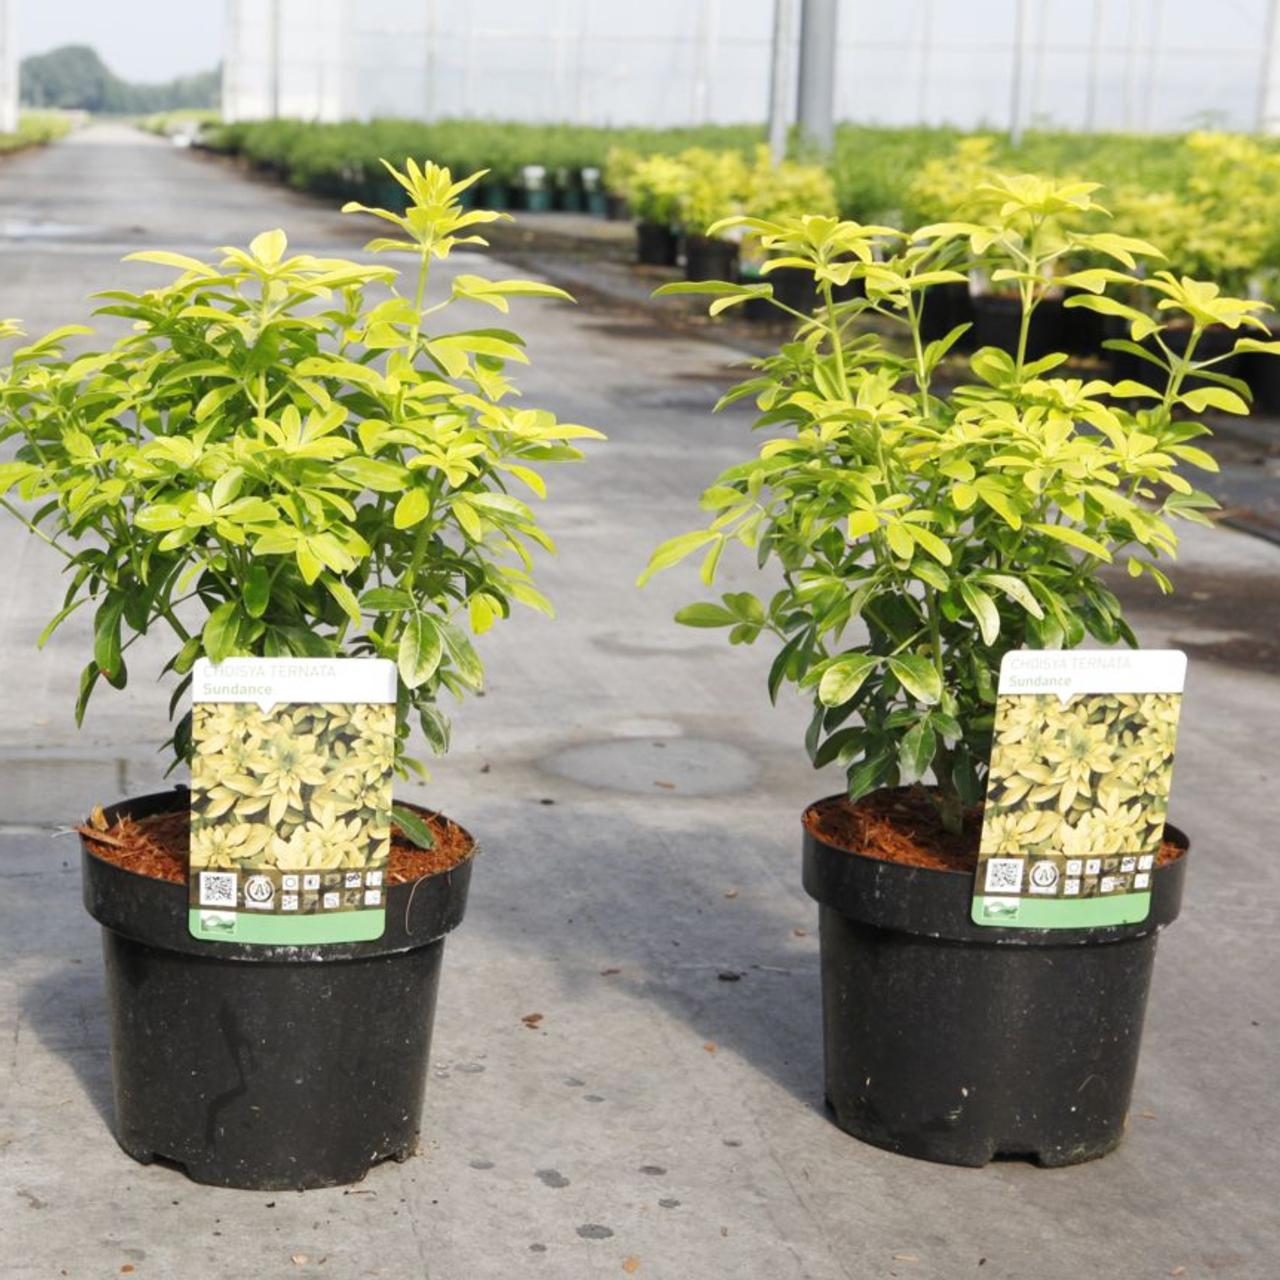 choisya ternata 'sundance' - kaufen sie pflanzen bei coolplants